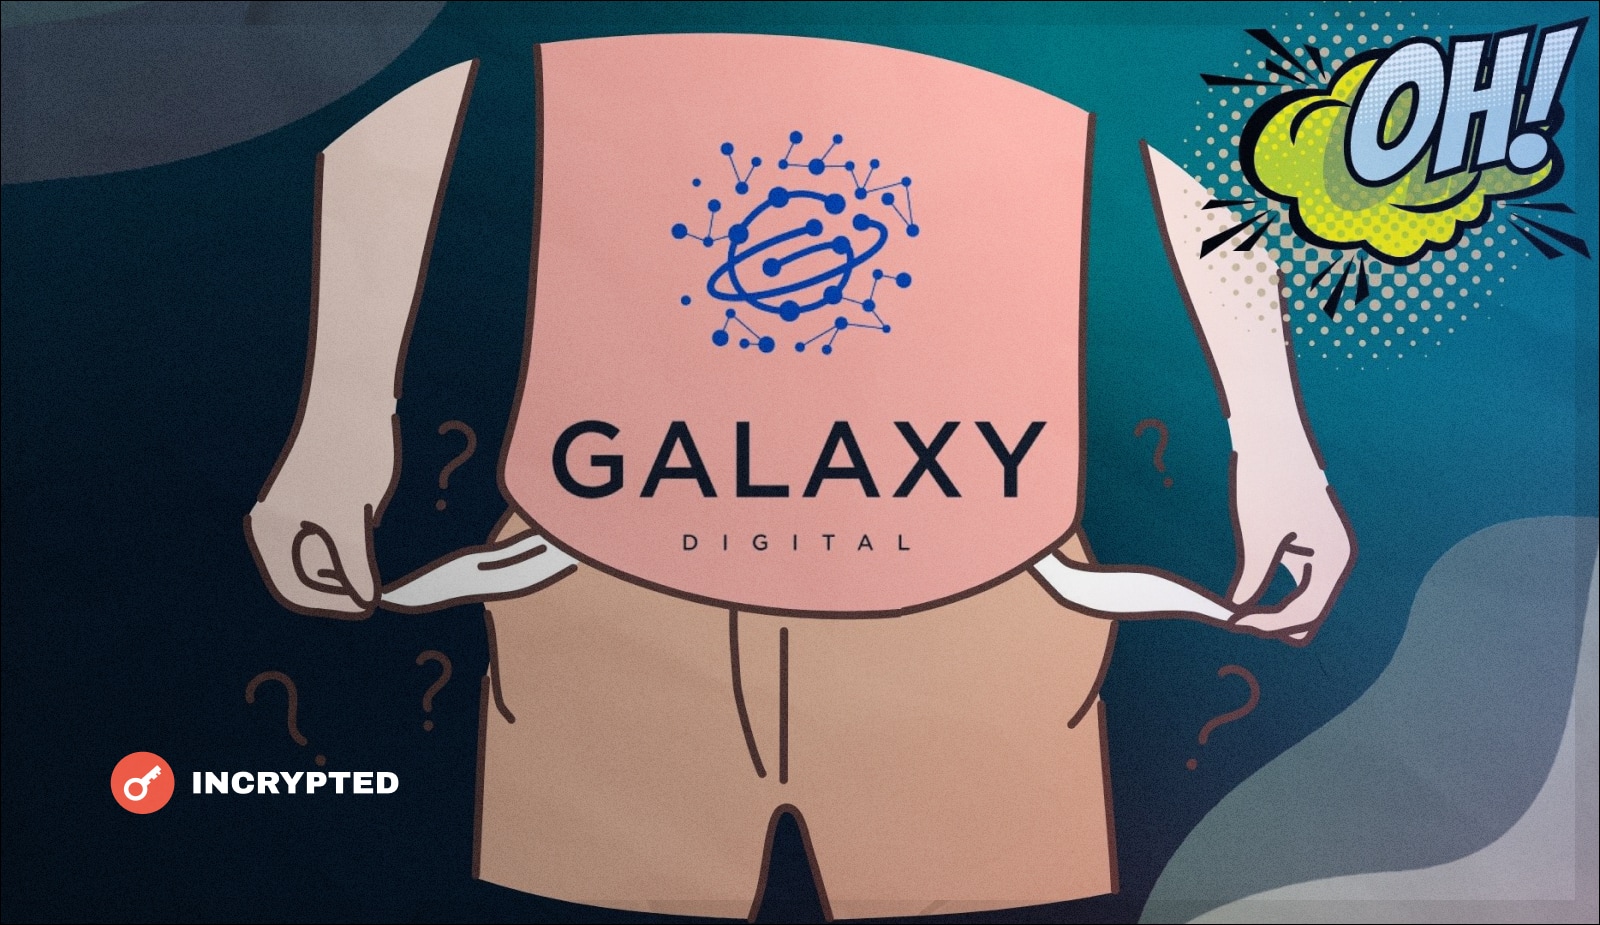 Galaxy Digital в убытке на $111,7 млн из-за падения крипторынка. Заглавный коллаж новости.